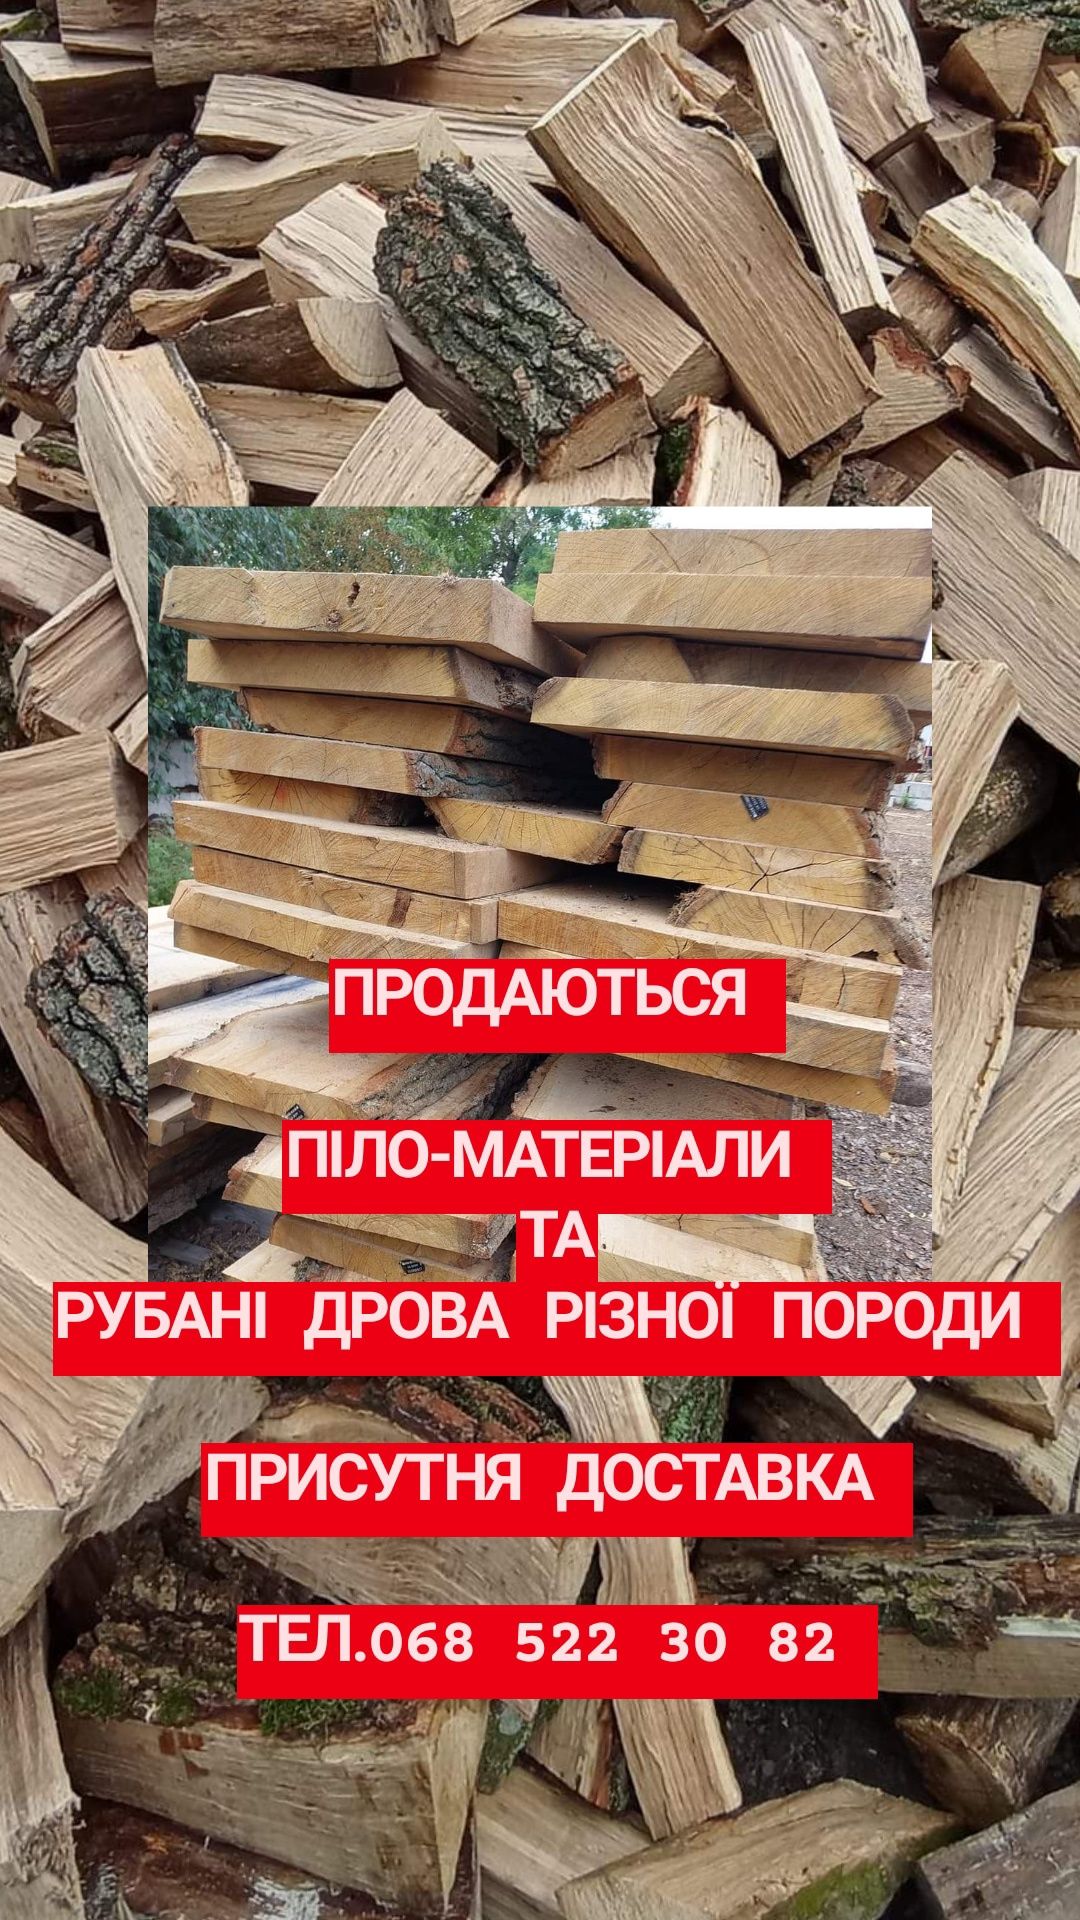 продам рубані дрова та піло-матеріали